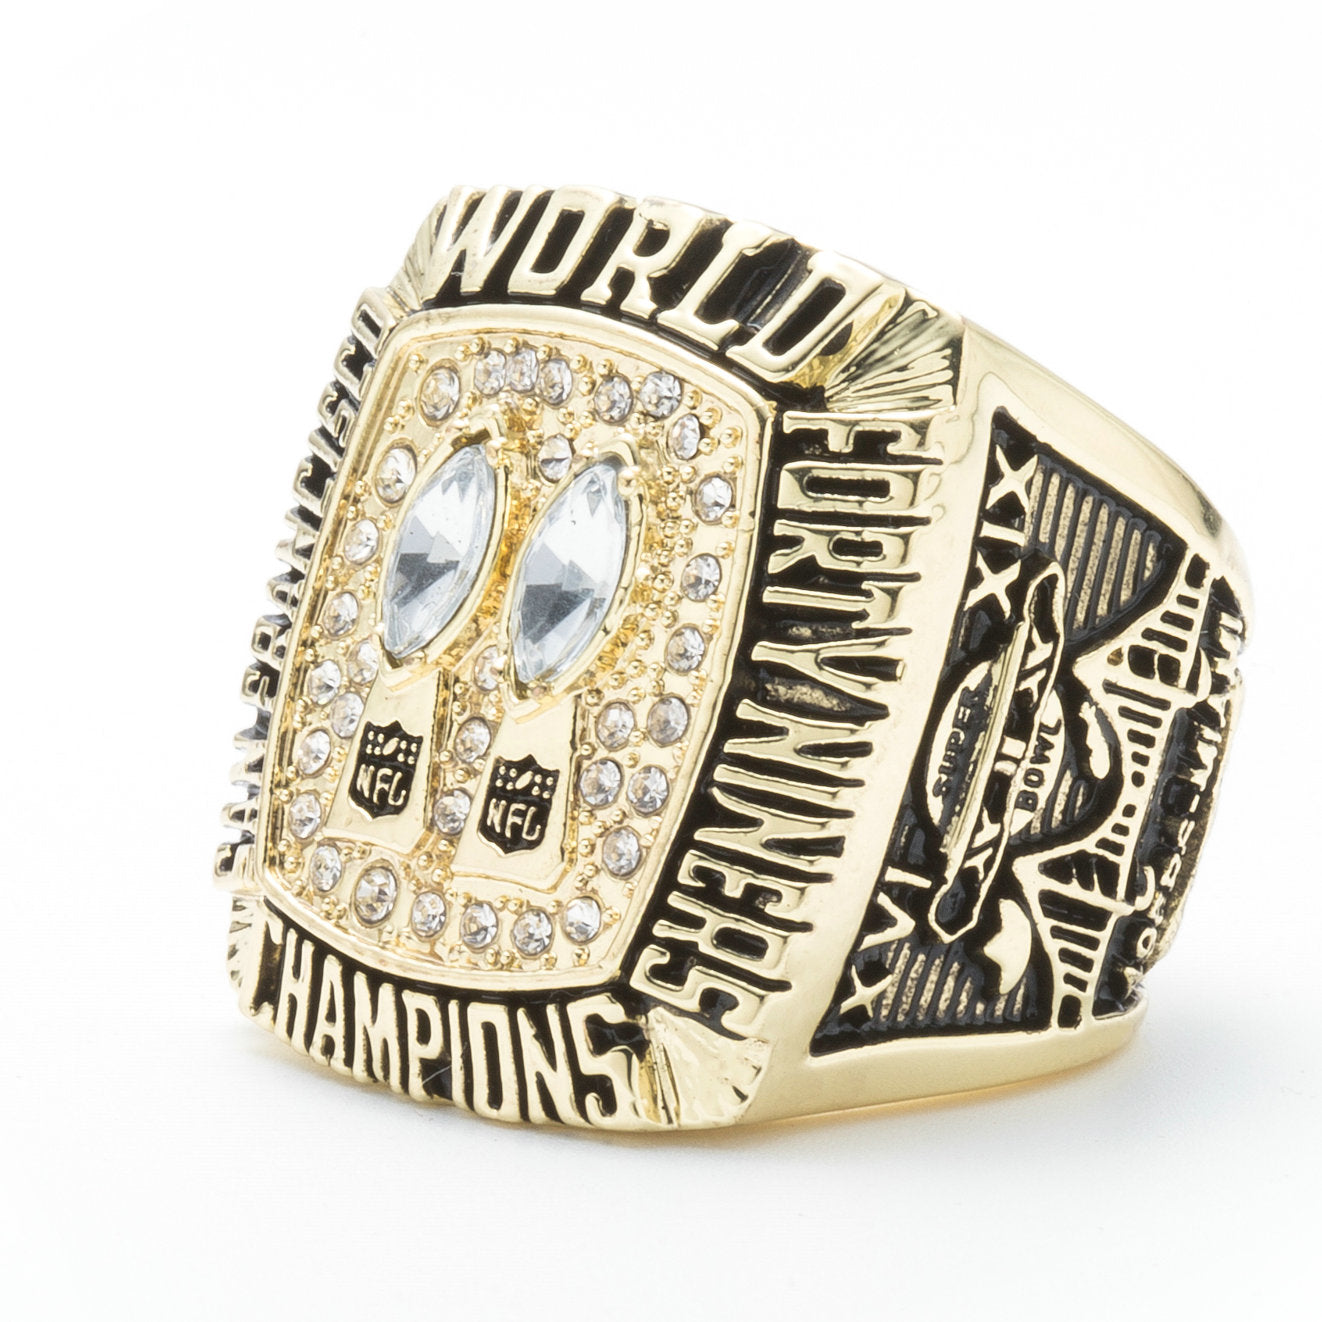 49er championship rings